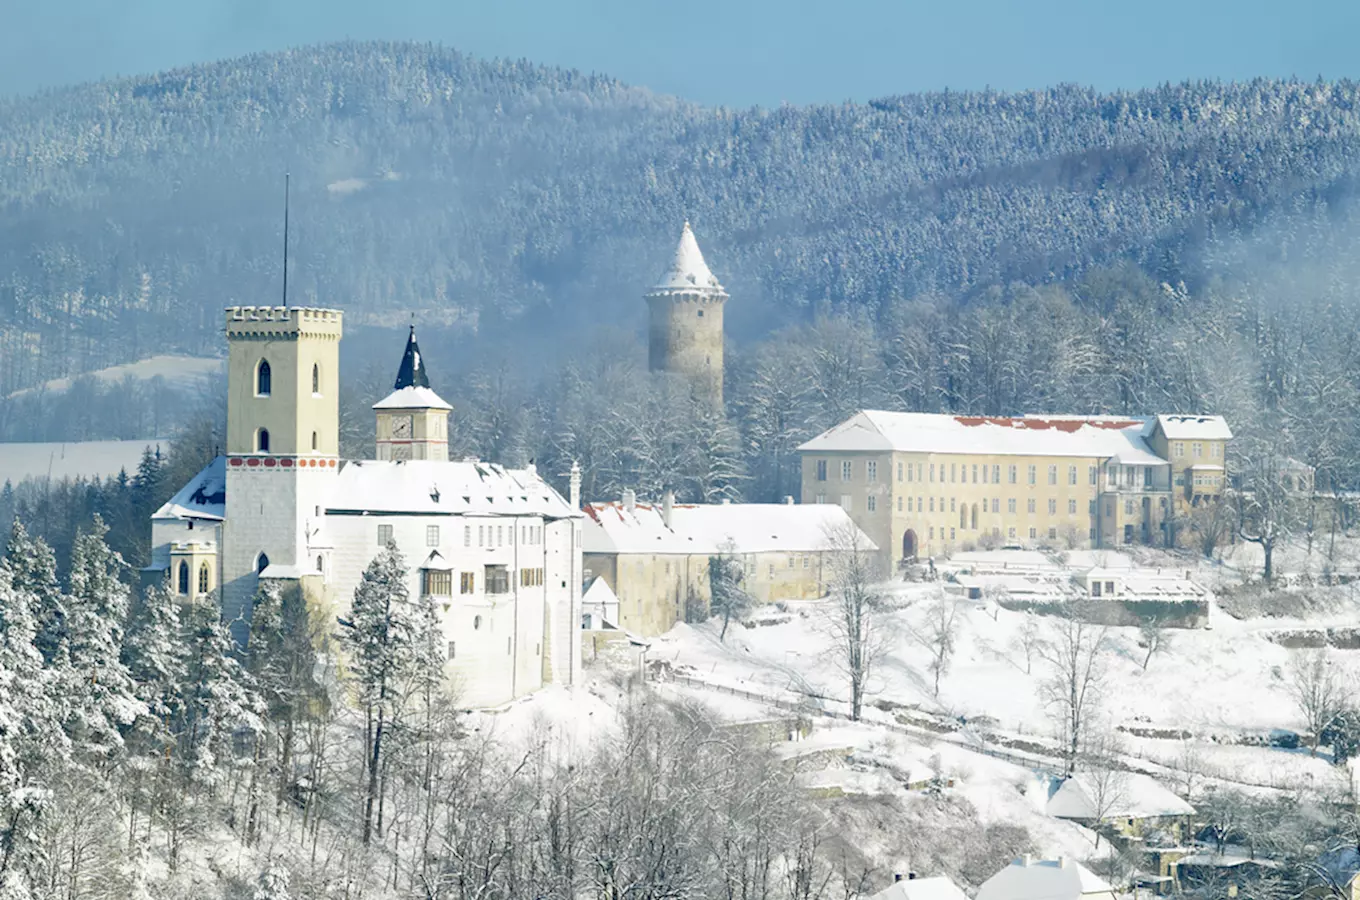 Zimní prohlídky hradu Rožmberk